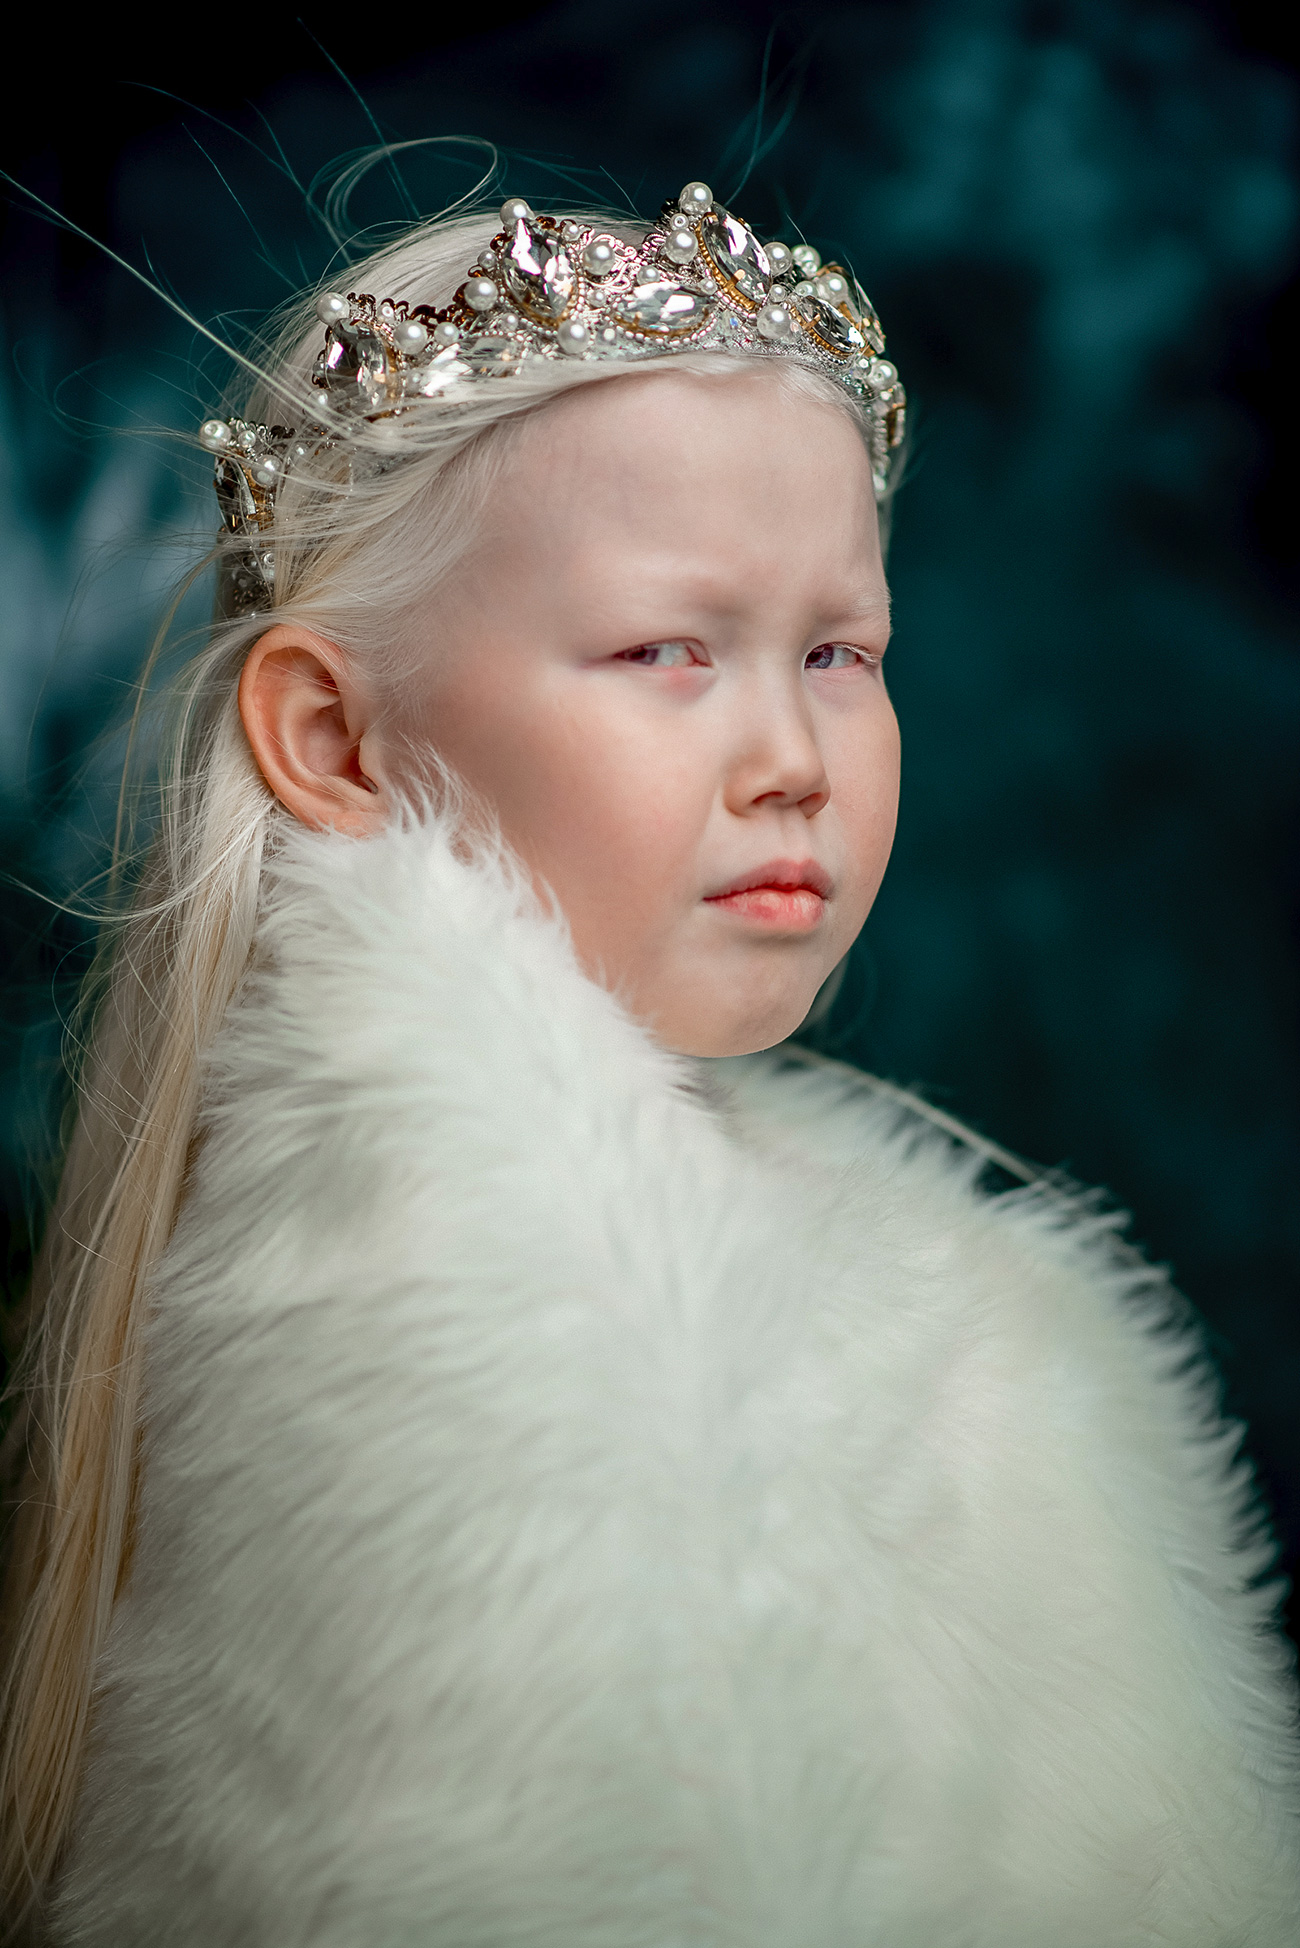 Nariyana adalah seorang gadis albino. Ia memiliki rambut seperti putri salju, dengan kulit layaknya porselen, dan mata bunglon berwarna biru keunguan. Penampilan fisiknya berbeda dari kebanyakan penduduk Yakutia lainnya, di mana sebagian besar perempuan memiliki rambut dan mata berwarna coklat.